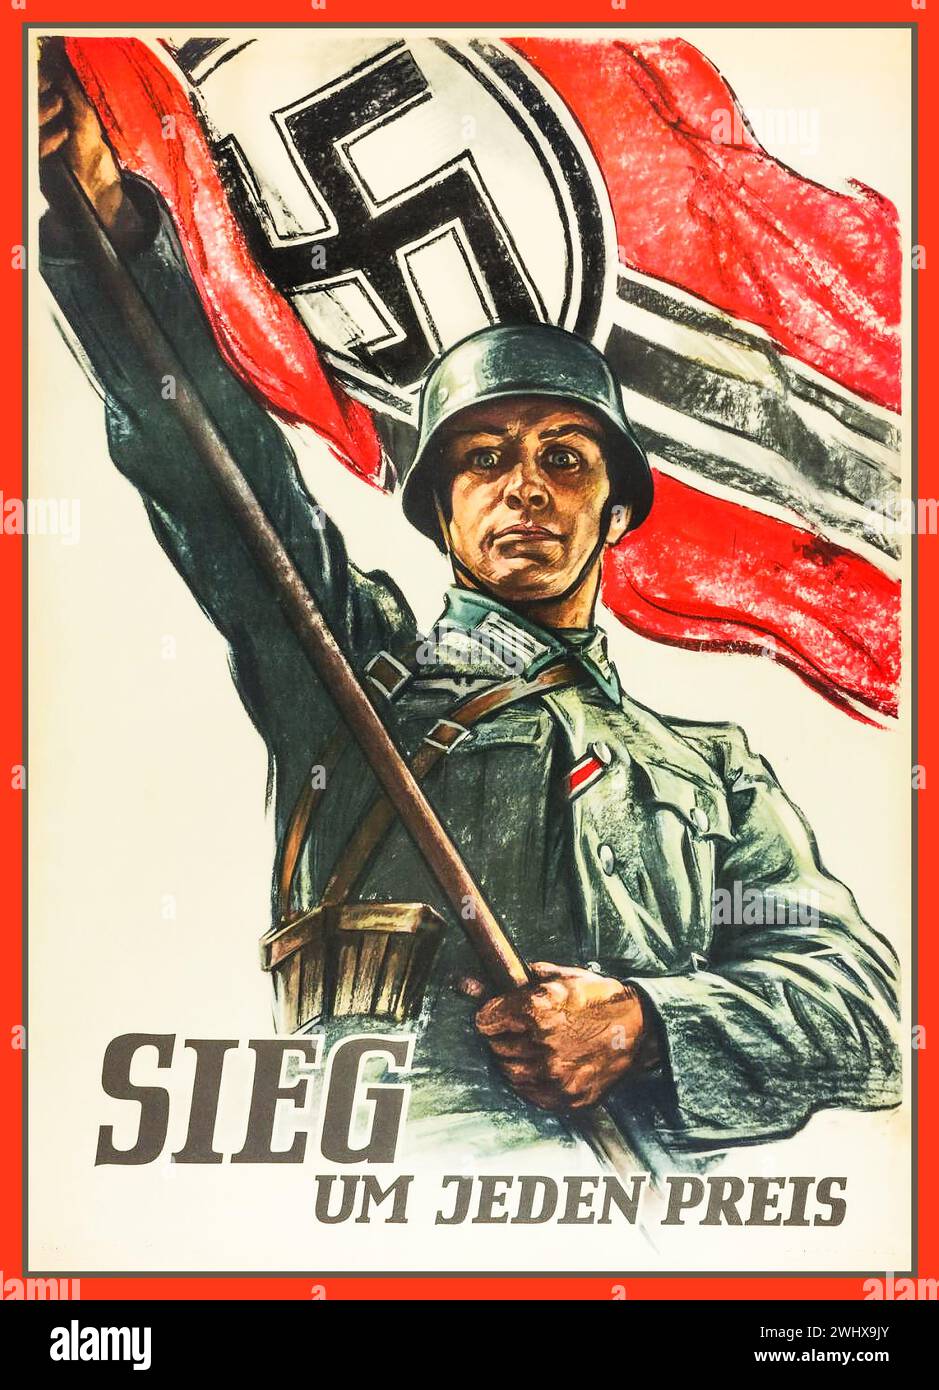 Soldat de l'armée de la Wehrmacht de la seconde Guerre mondiale portant un grand drapeau svastika avec le titre de propagande ' VICTOIRE à tout prix ' seconde Guerre mondiale Allemagne nazie de la seconde Guerre mondiale Banque D'Images